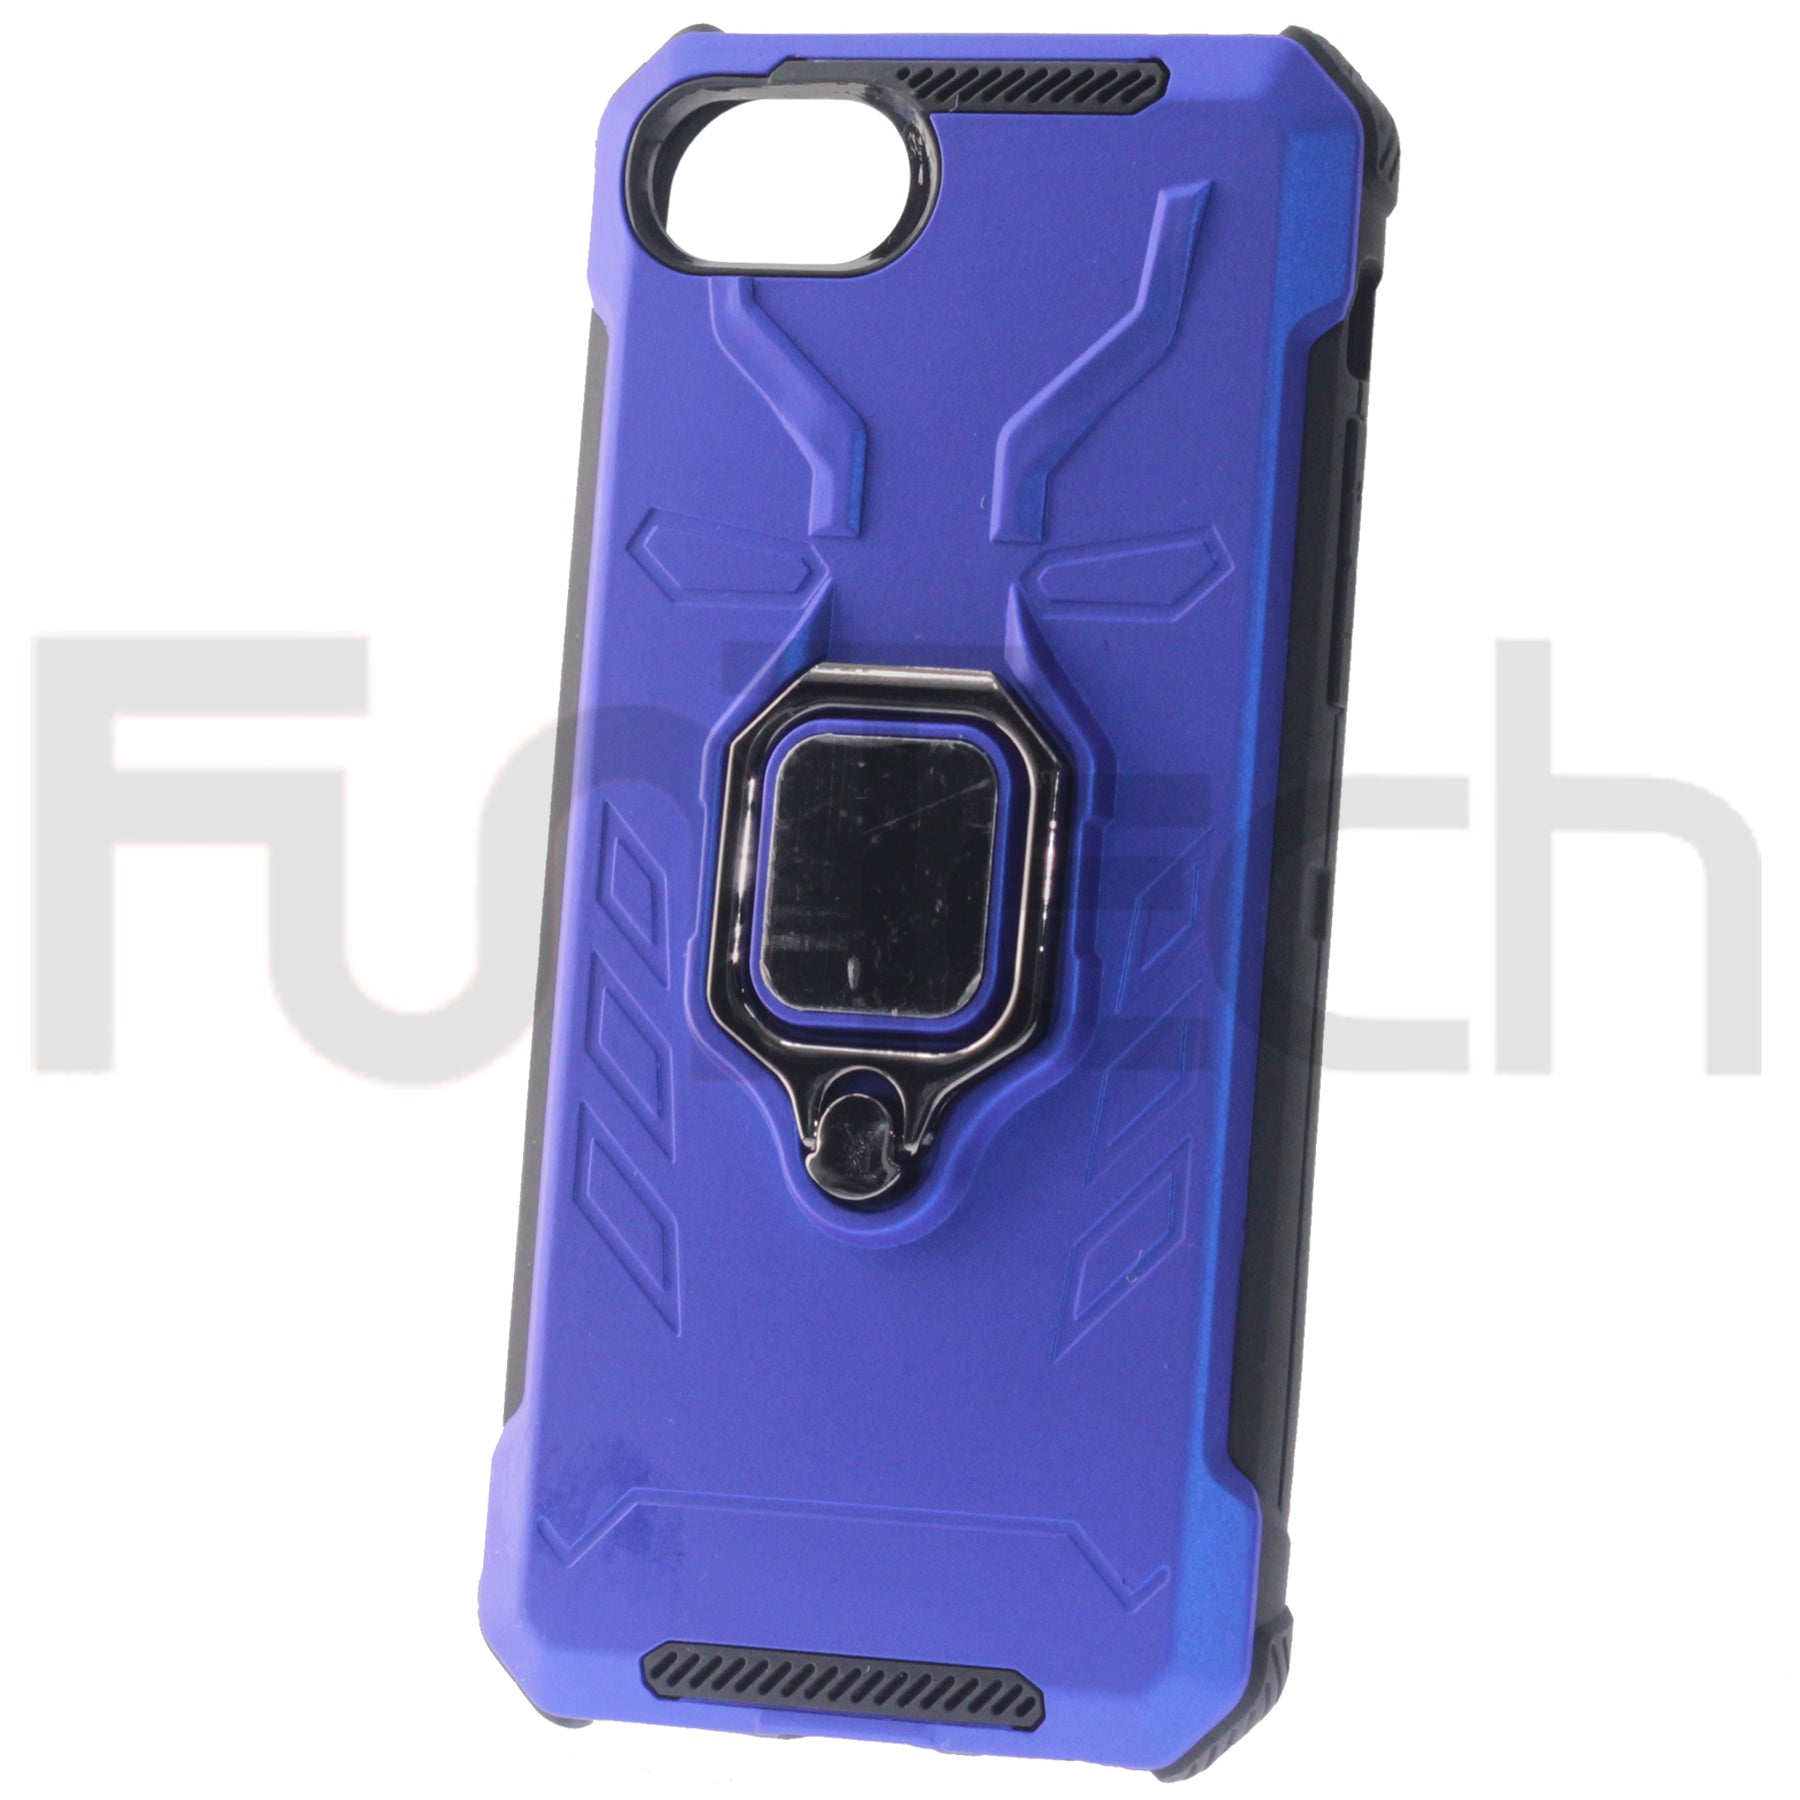 Apple iPhone 6/7/8/SE2020, Case, Color Blue.